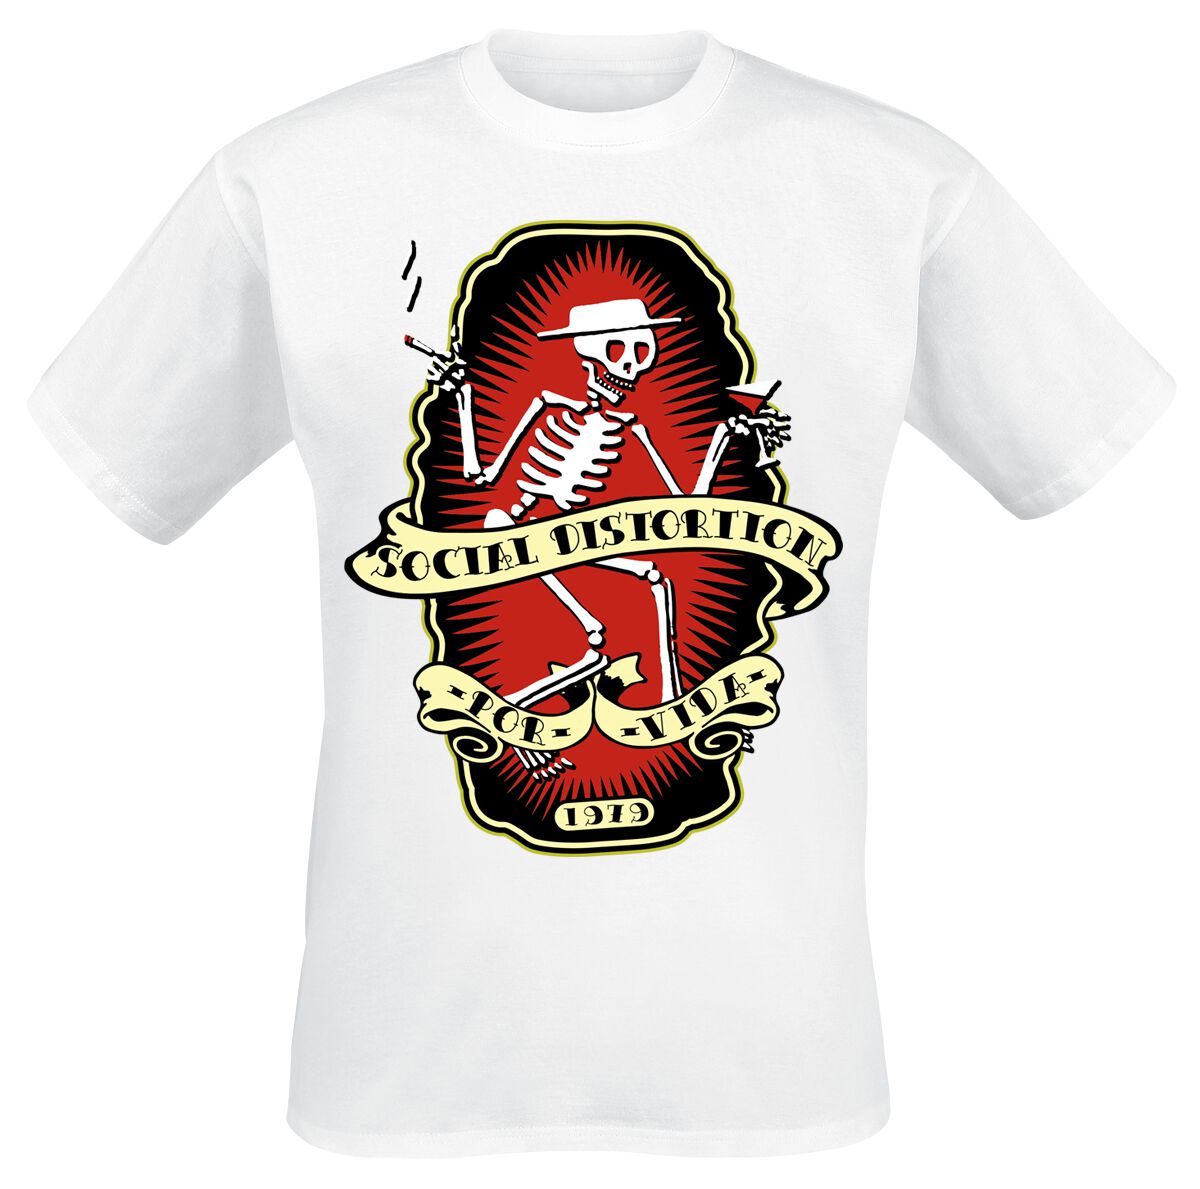 Social Distortion T-Shirt - Por Vida - S bis 3XL - für Männer - Größe S - weiß  - Lizenziertes Merchandise!